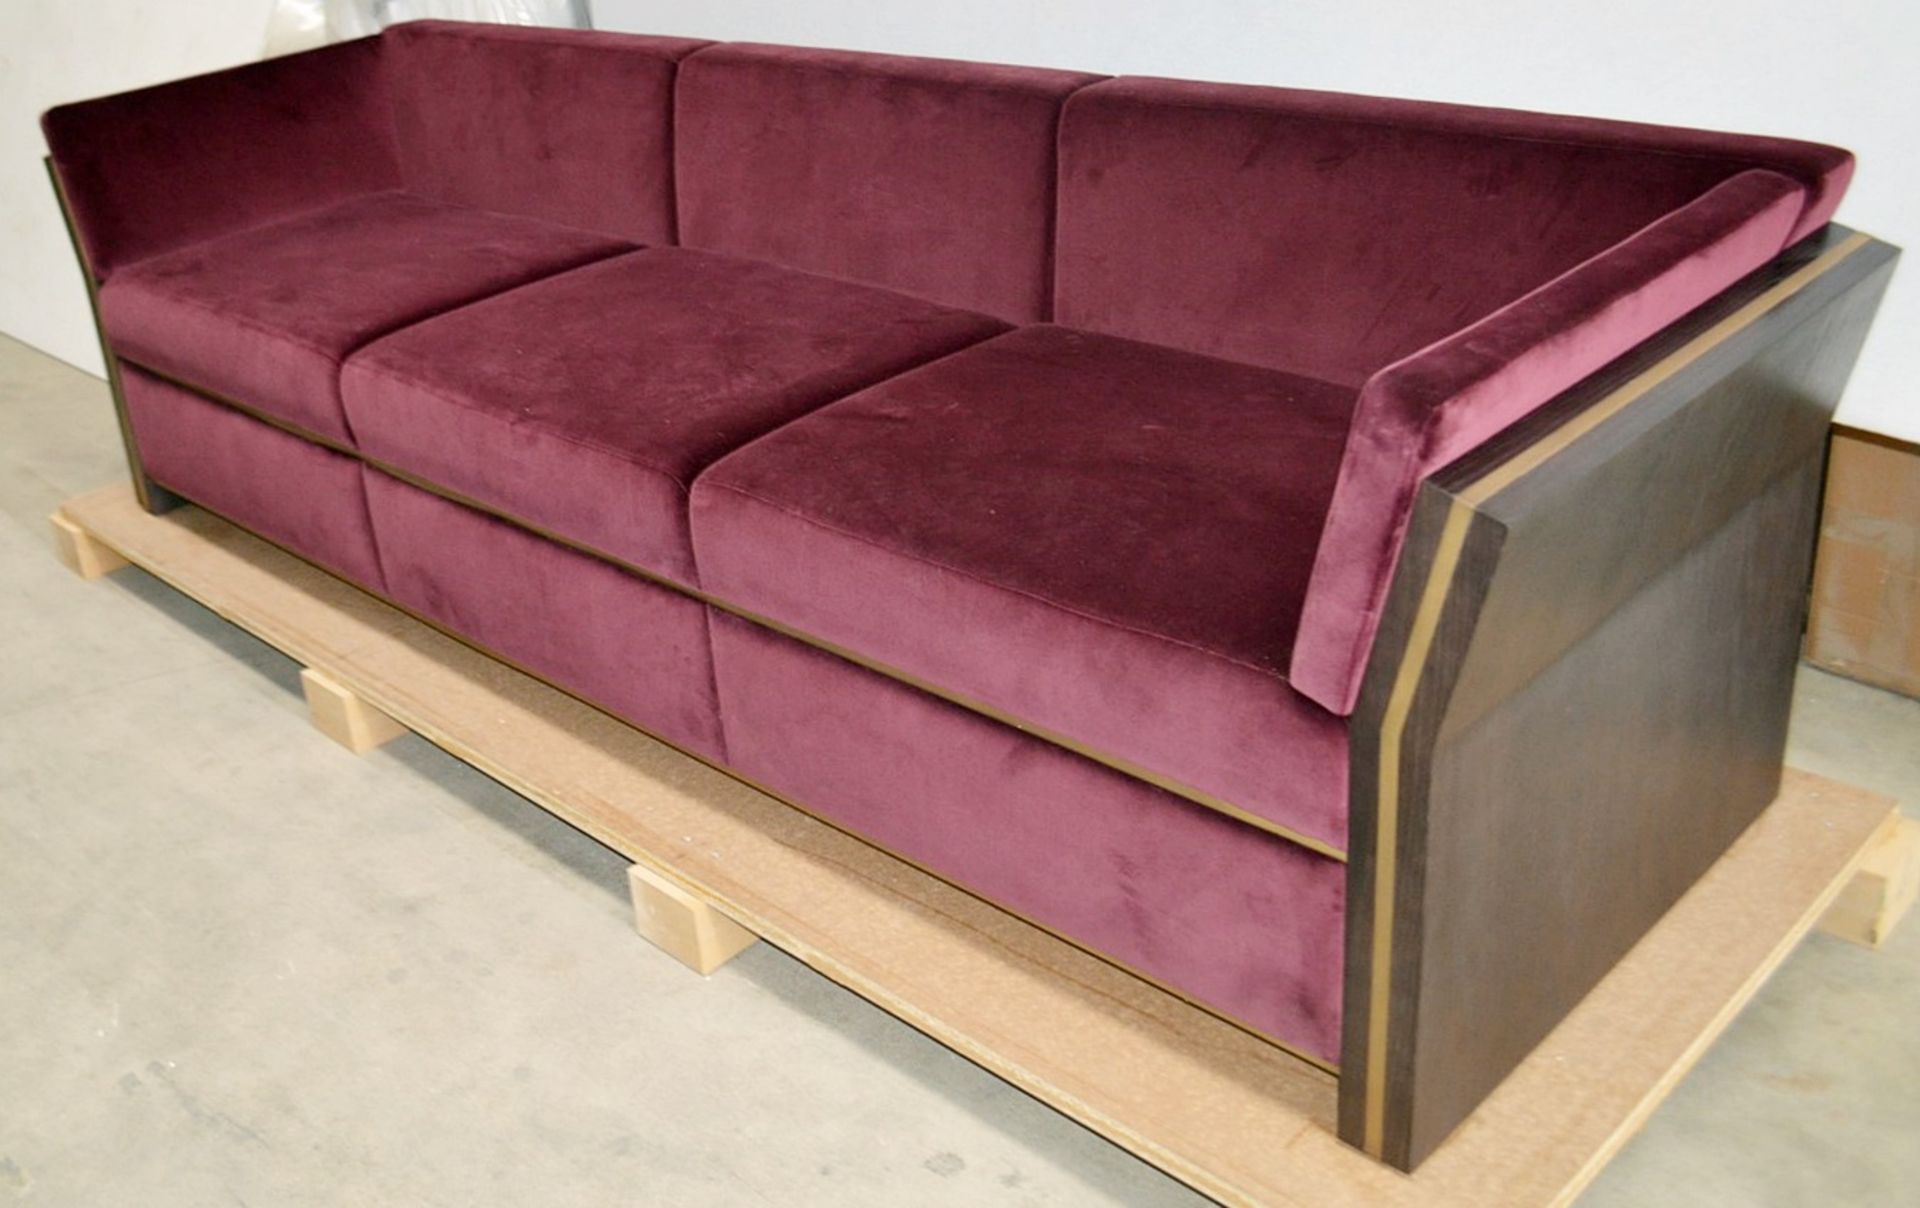 1 x FRATO 'Udaipur' 3 Seater Sofa With Custom Burgundy Velvet Upholstery - Original RRP £8,040